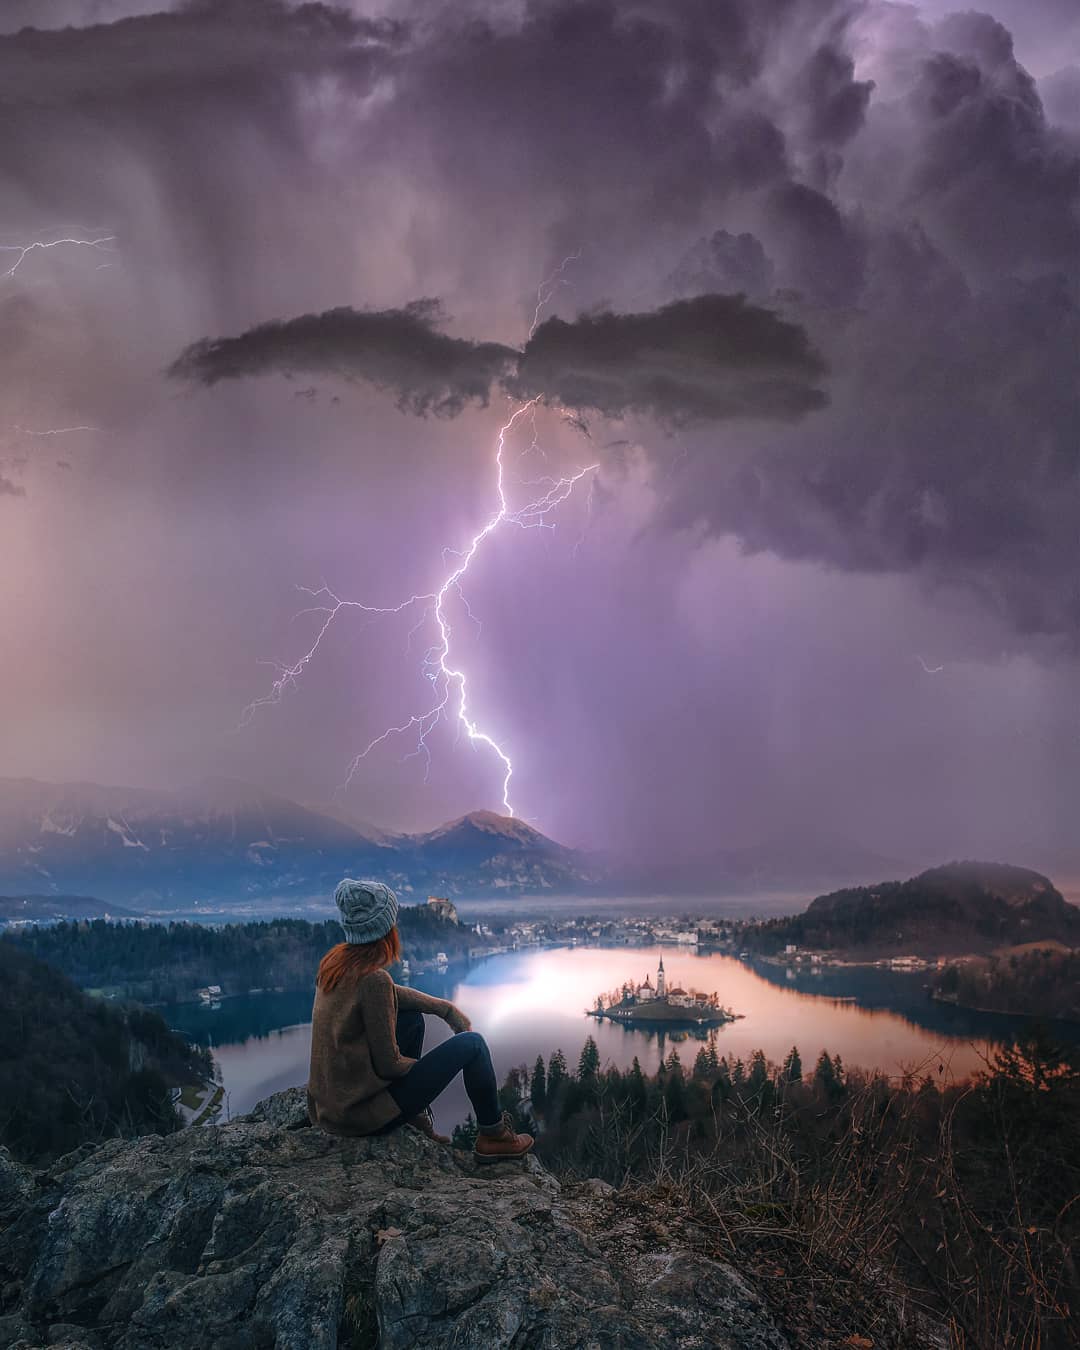 Штормы, молнии и звезды на пейзажных снимках Брента Шавнора